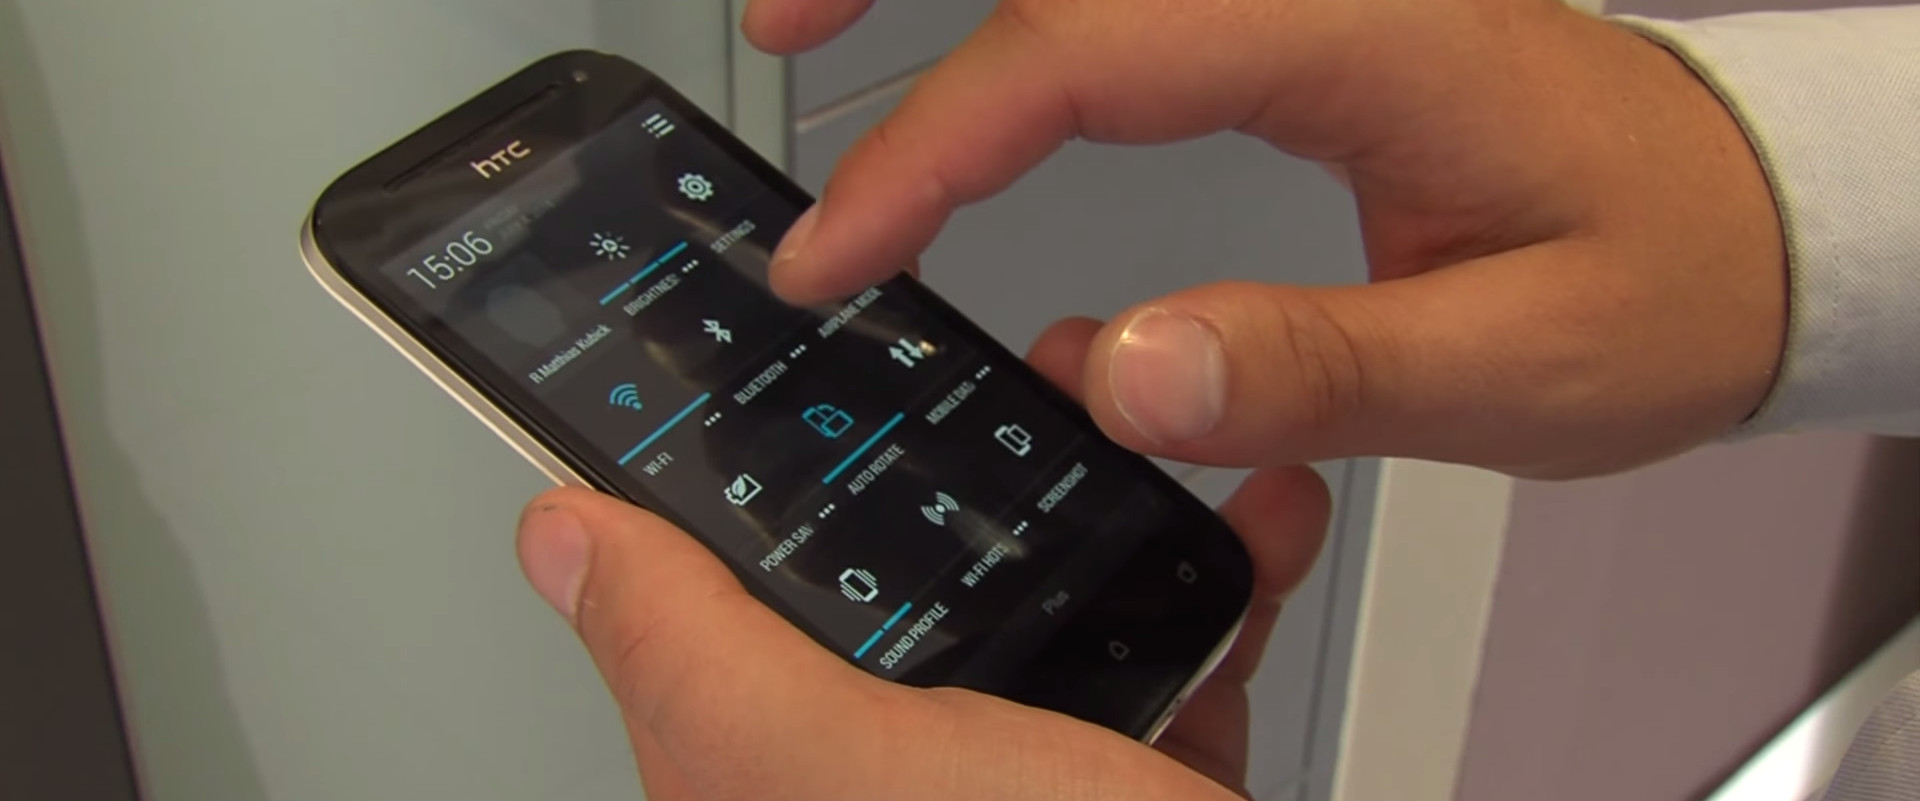 Włączenie Bluetooth by umożliwić otwieranie drzwi telefonem komórkowym. - Idencom Polska